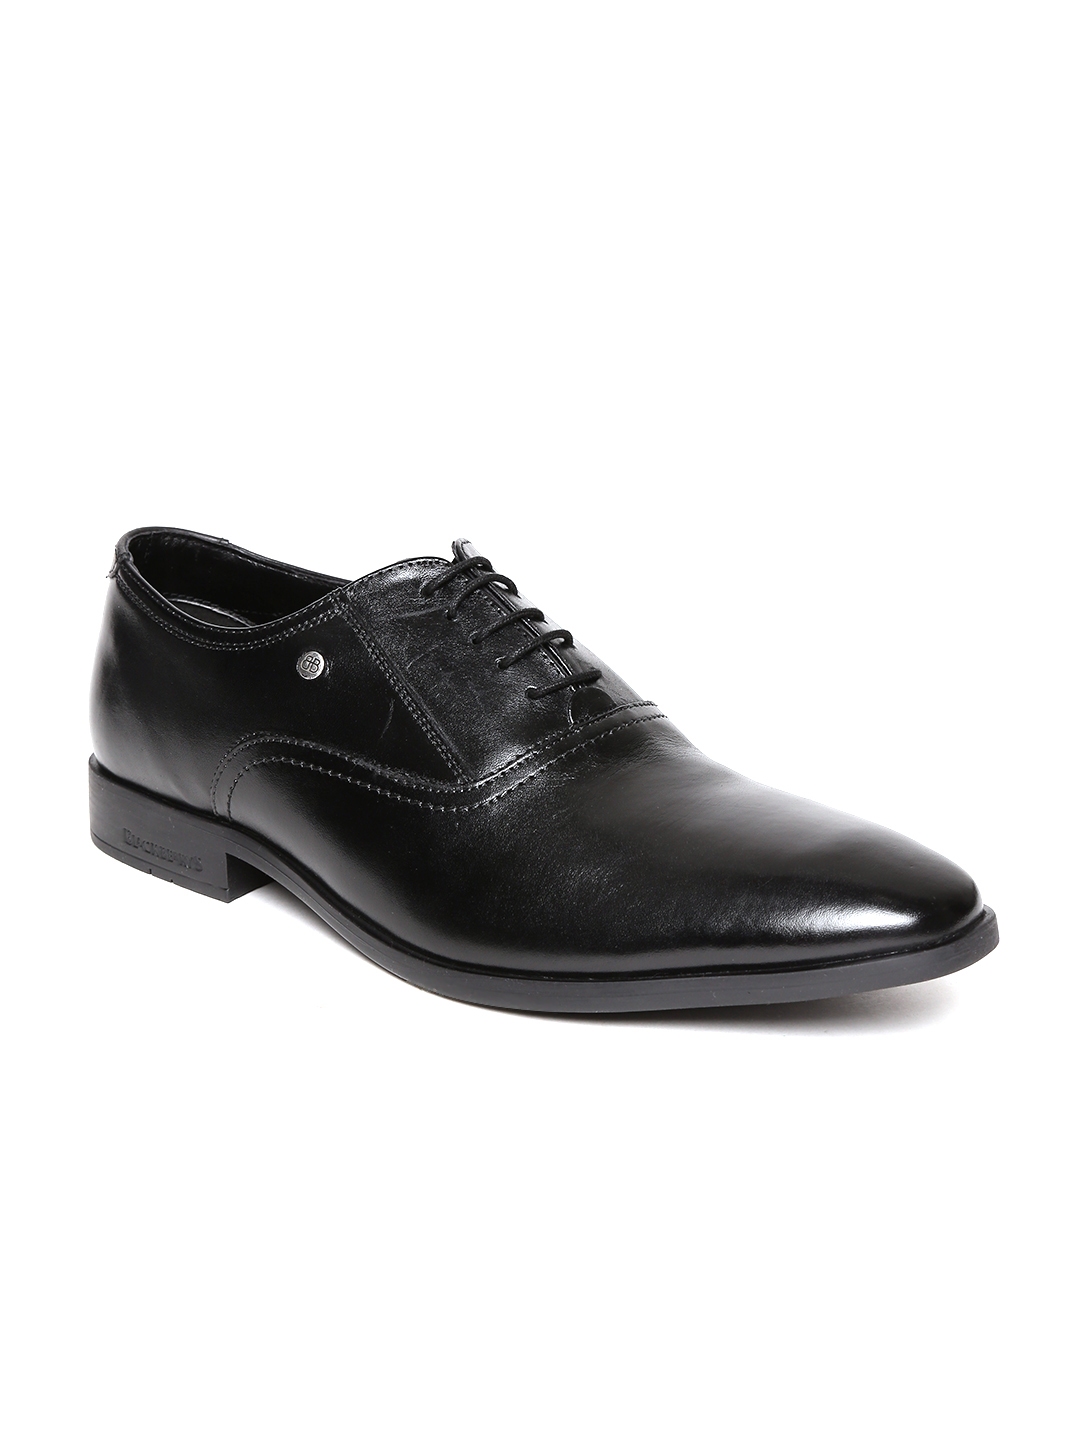 Buy Blackberrys Men Black Genuine Leather Formal Oxfords - Formal Shoes ...